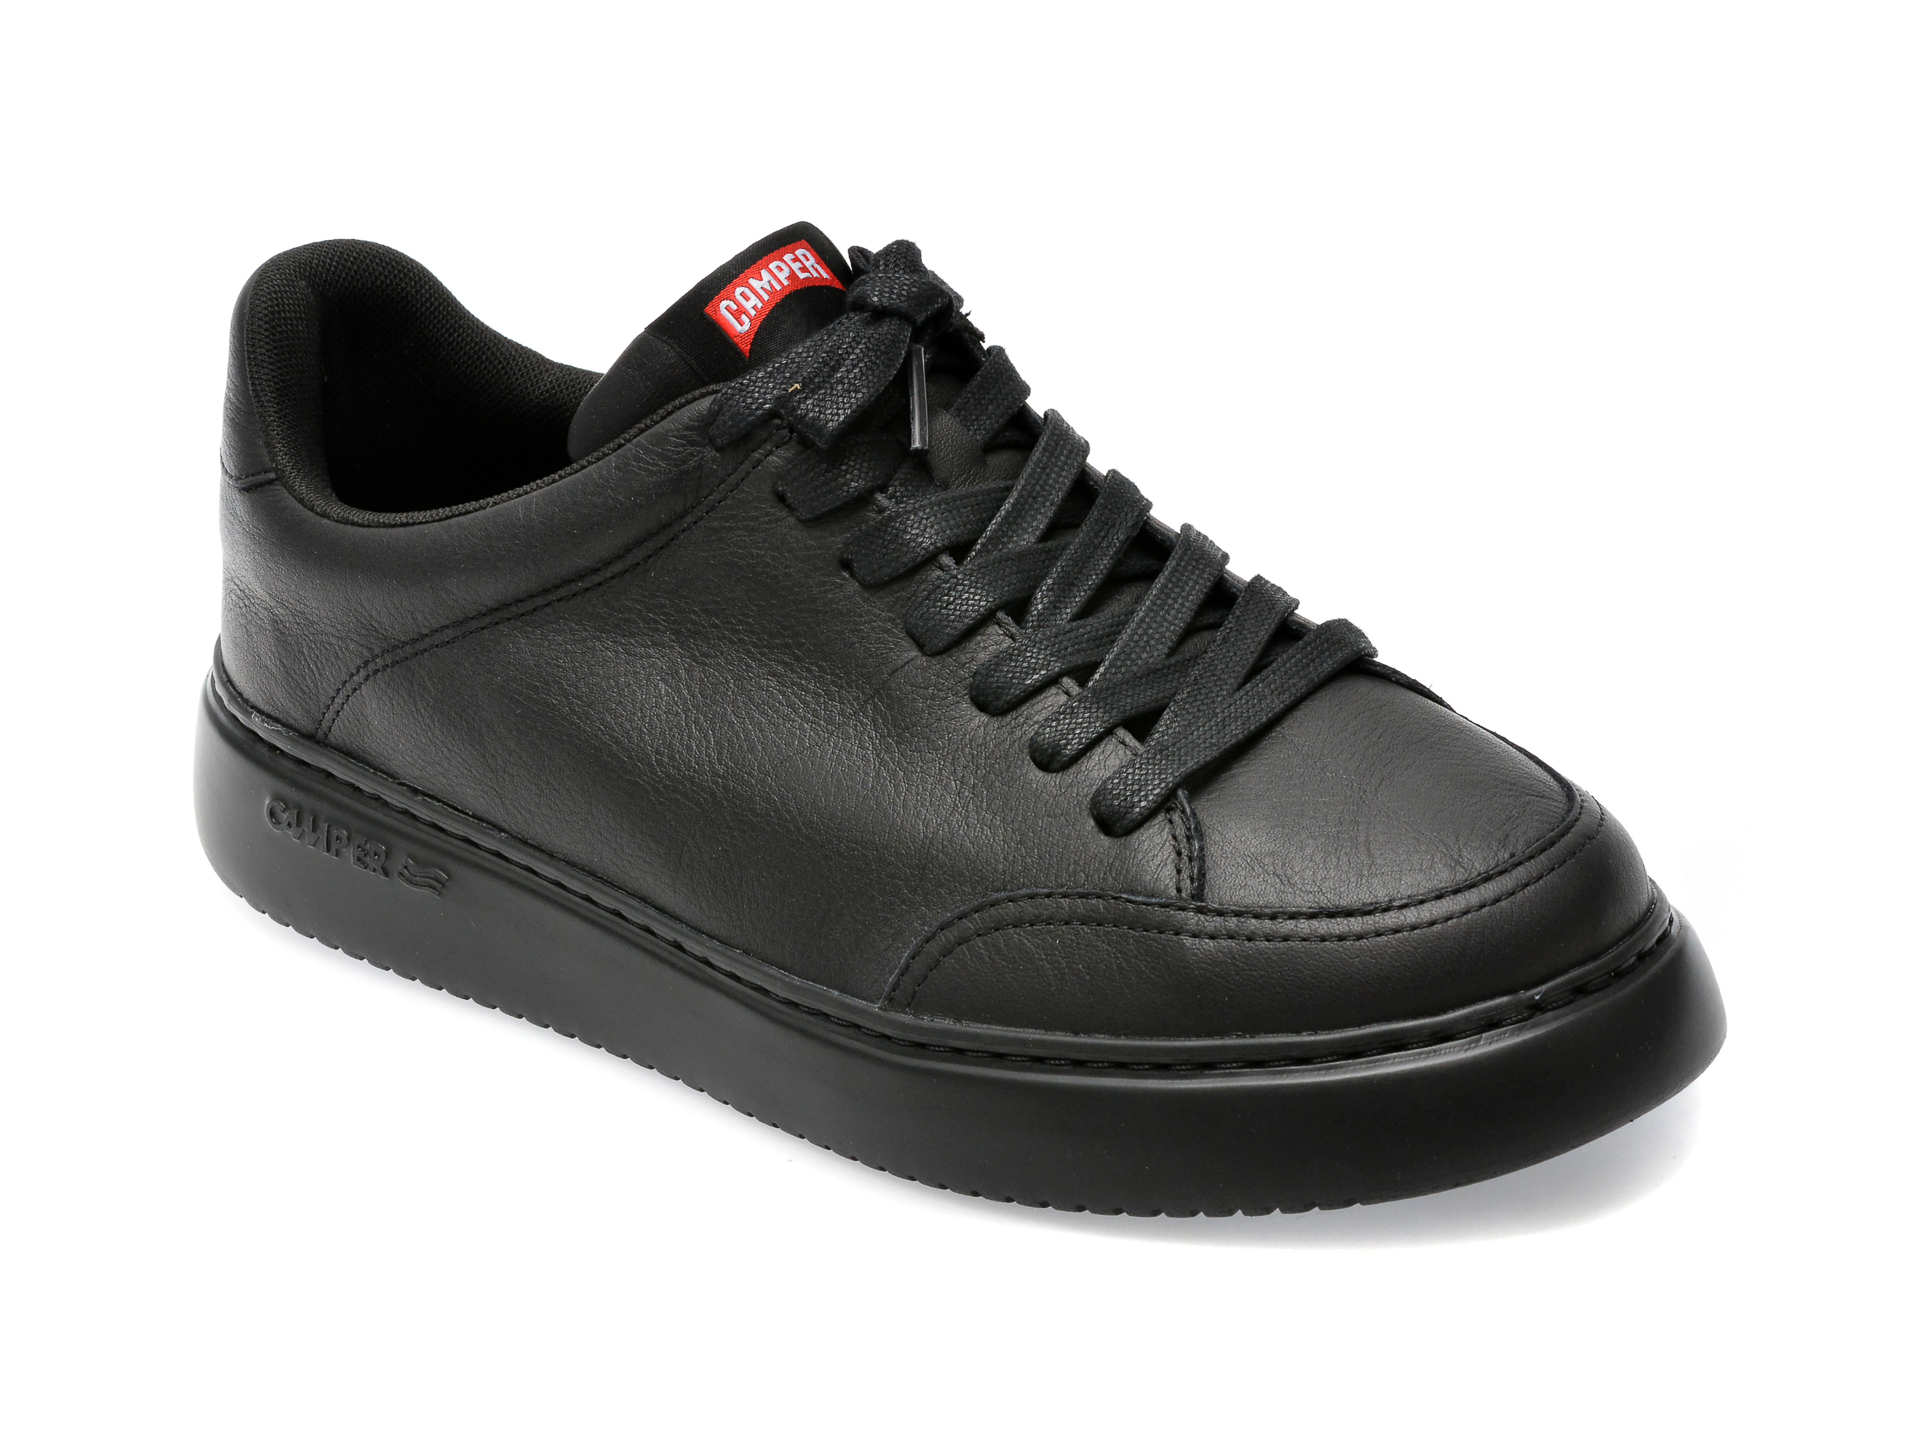 Pantofi CAMPER negri, K100841, din piele naturala